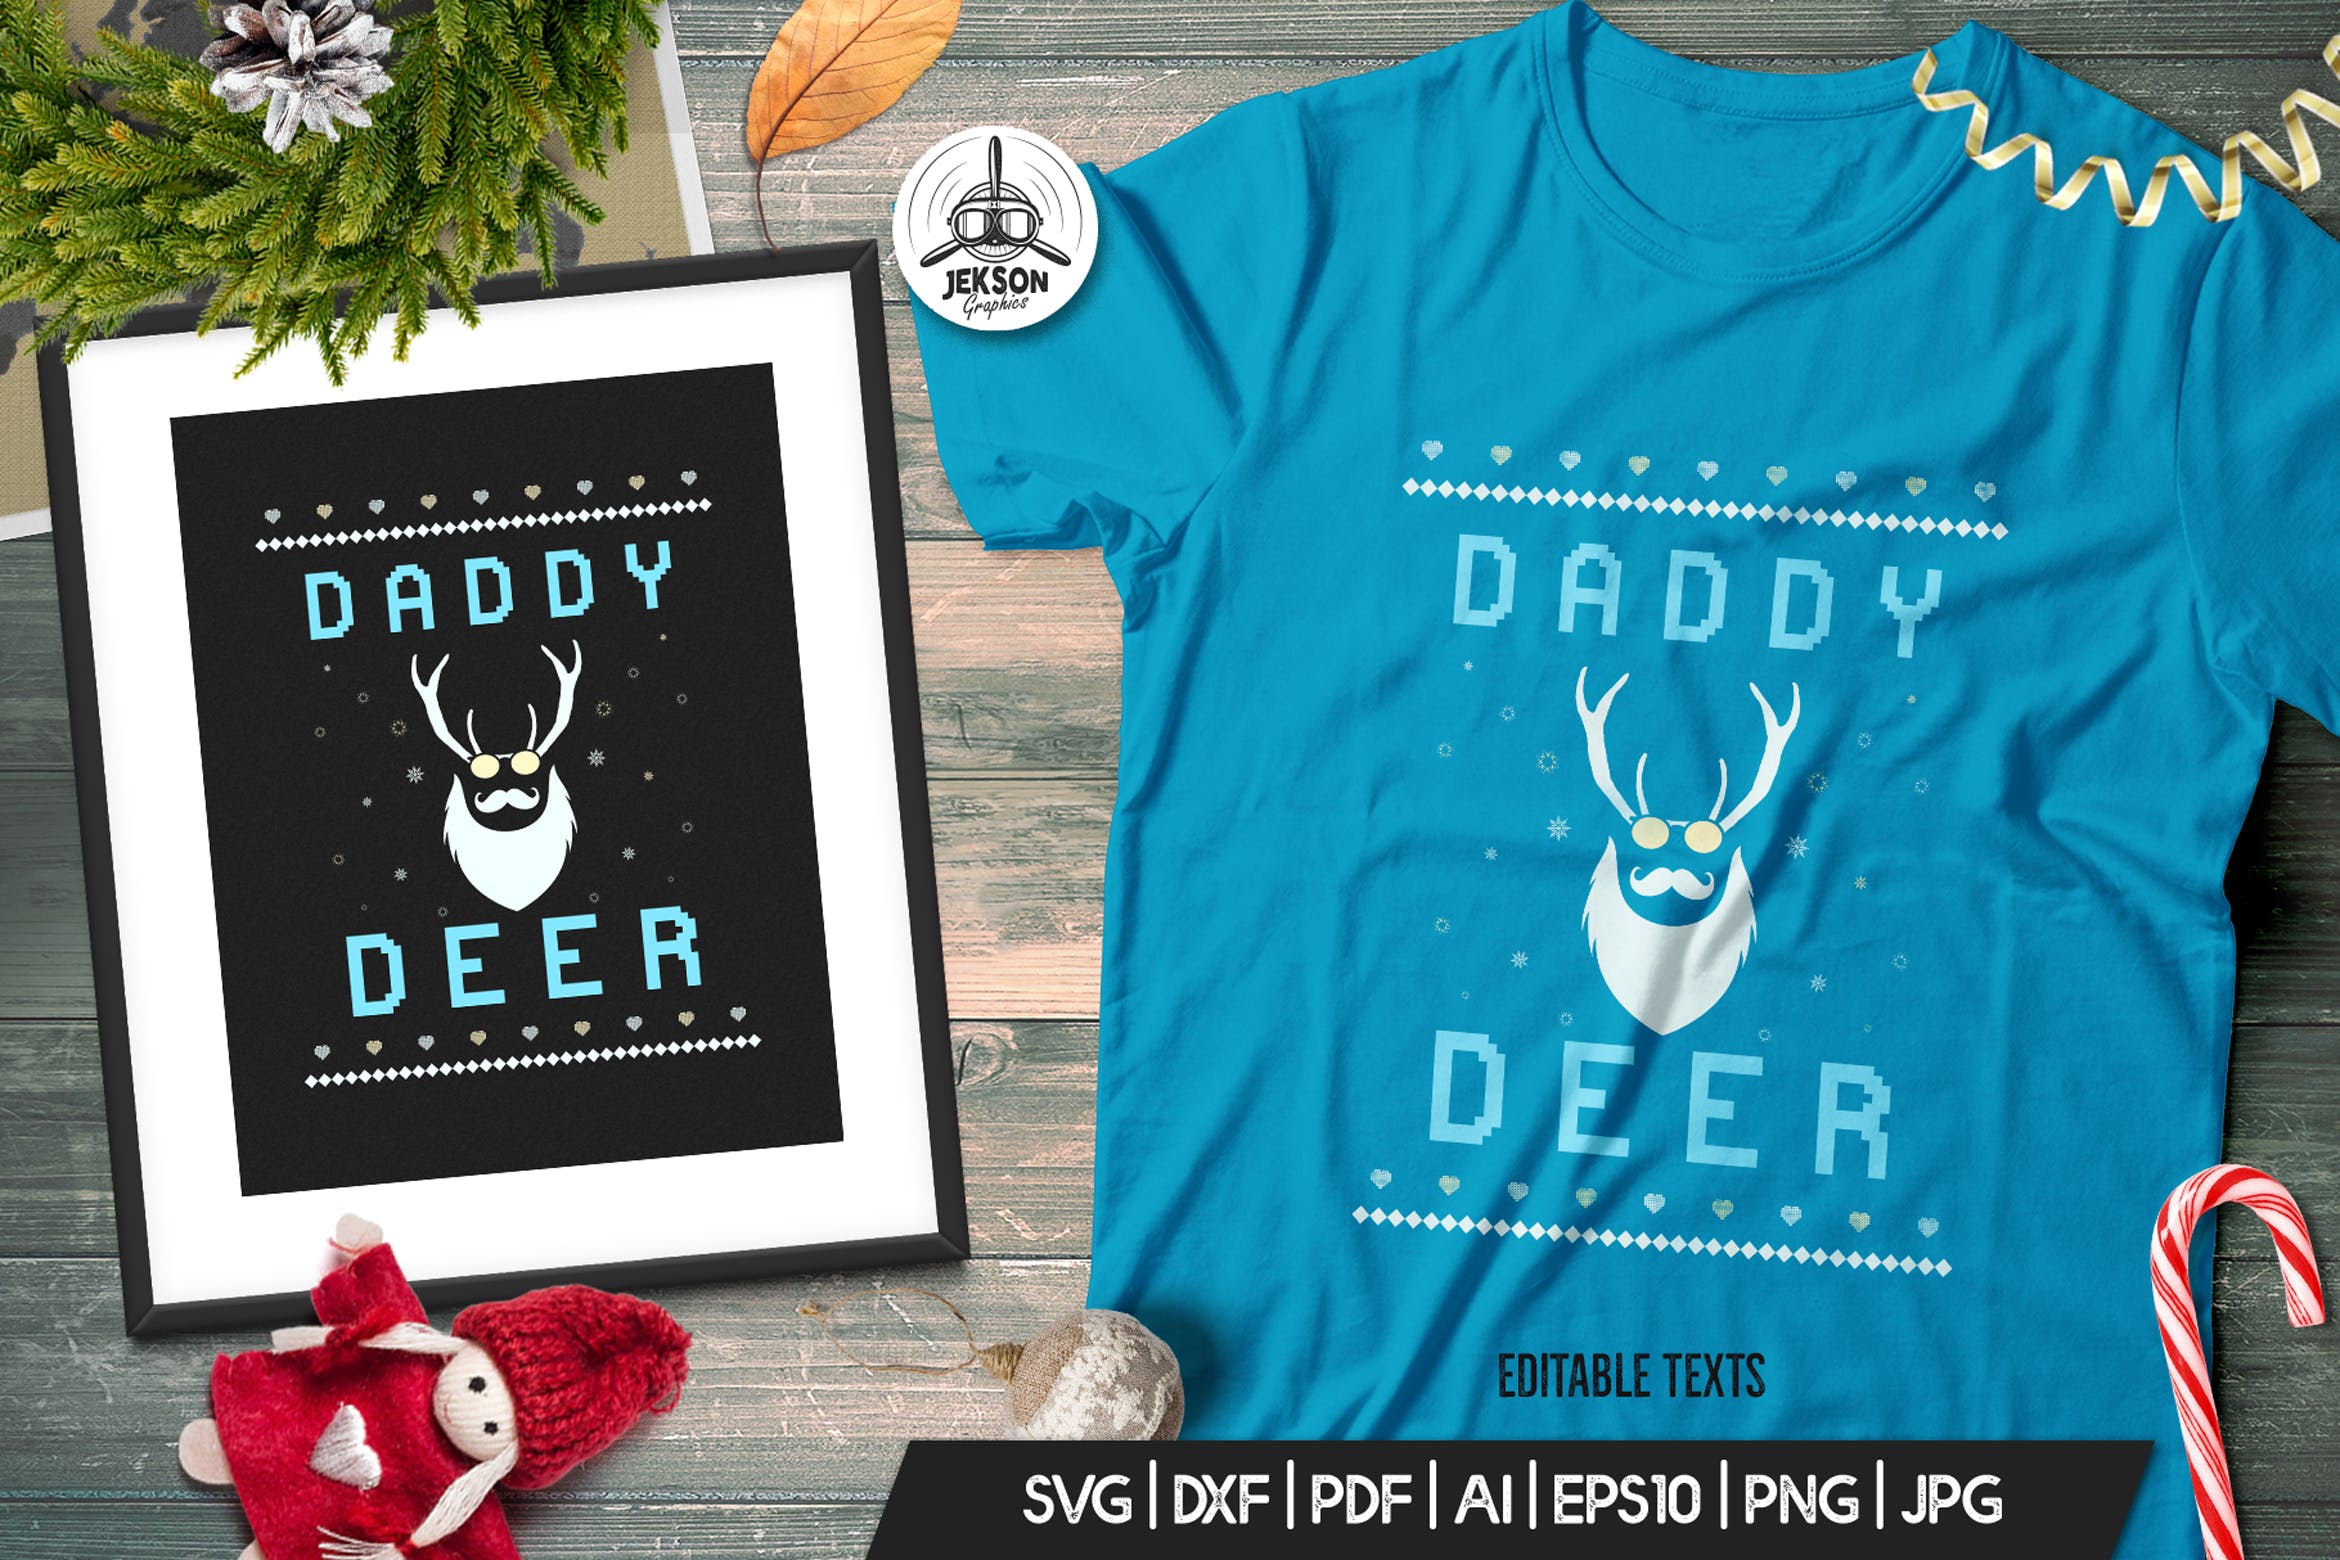 复古风格圣诞节主题T恤创意麋鹿印花图案设计素材 Vintage Ugly Christmas Print TShirt Design, Deer插图